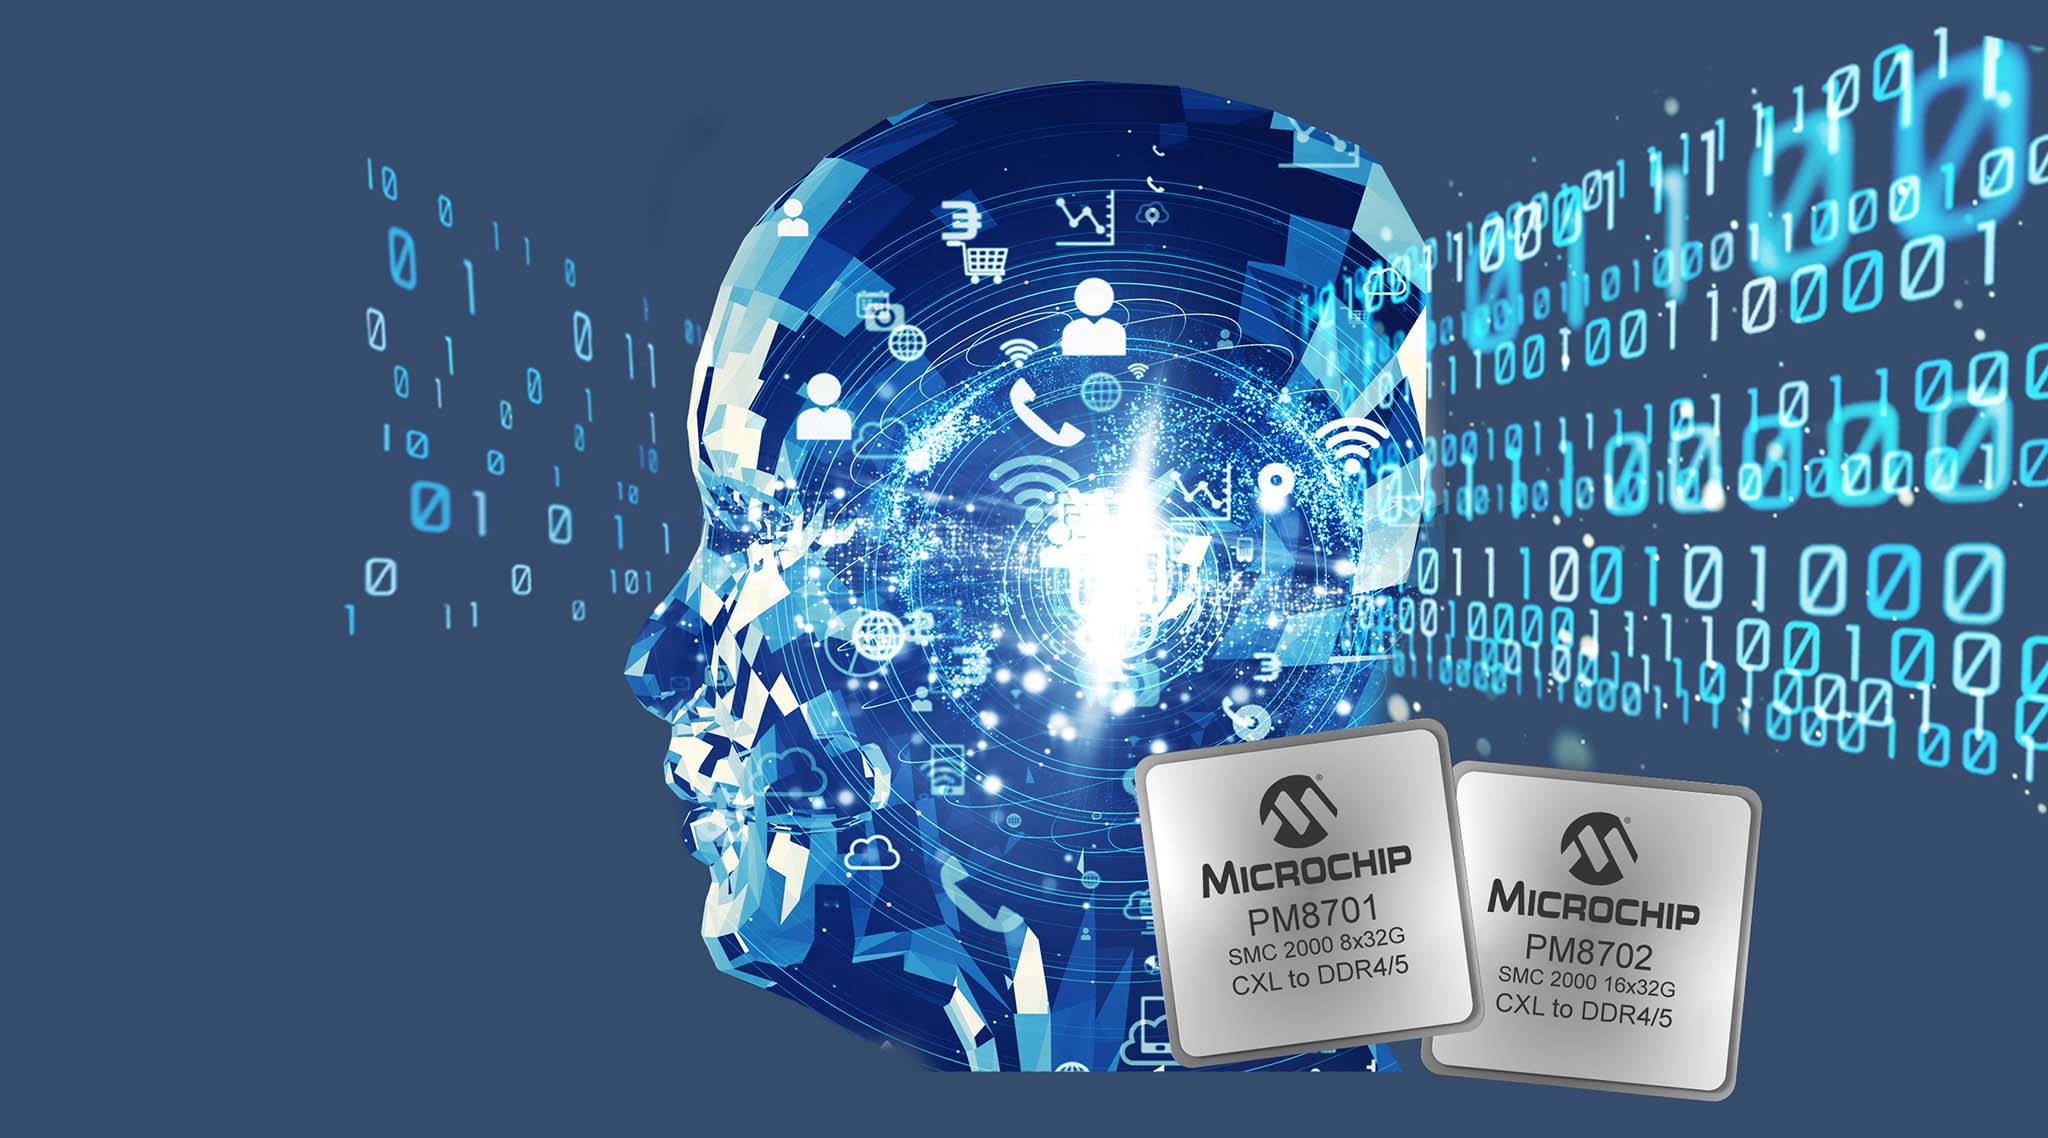 Microchip giới thiệu giải pháp điều khiển bộ nhớ thông minh CXL™ mới dành cho máy tính trung tâm dữ liệu, giúp các CPU hiện đại tối ưu hóa các ứng dụng